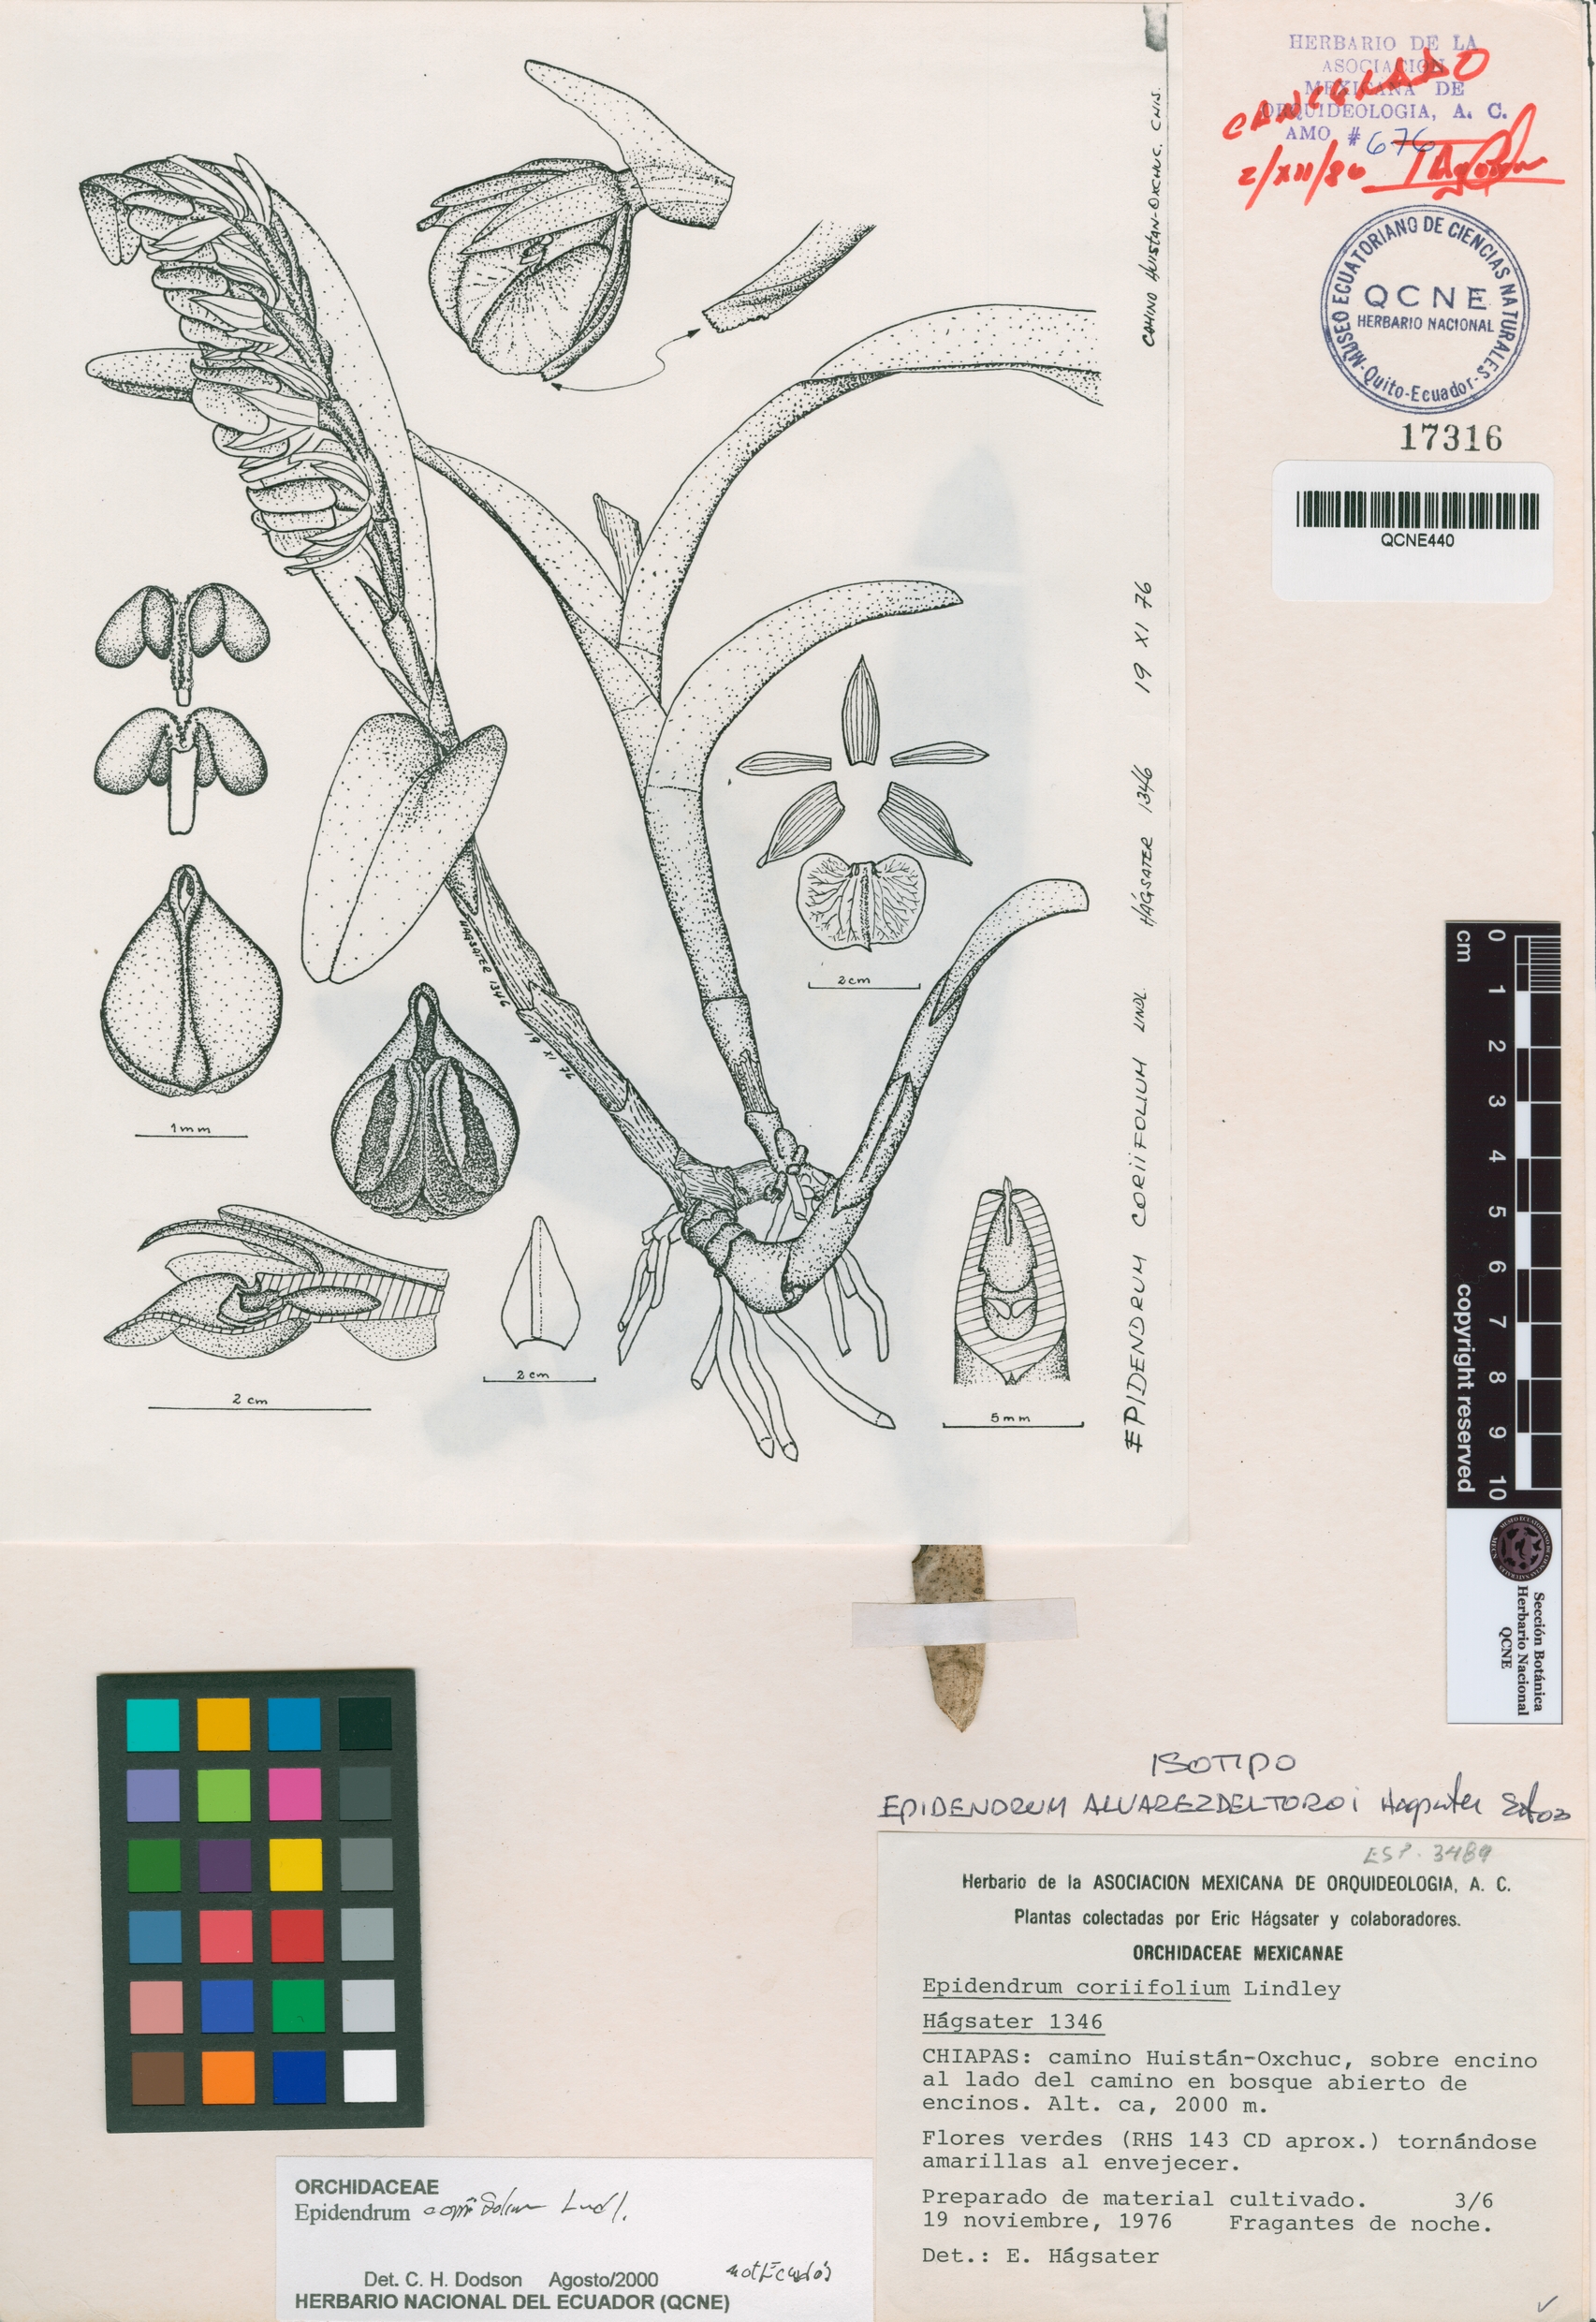 Epidendrum alvarezdeltoroi image